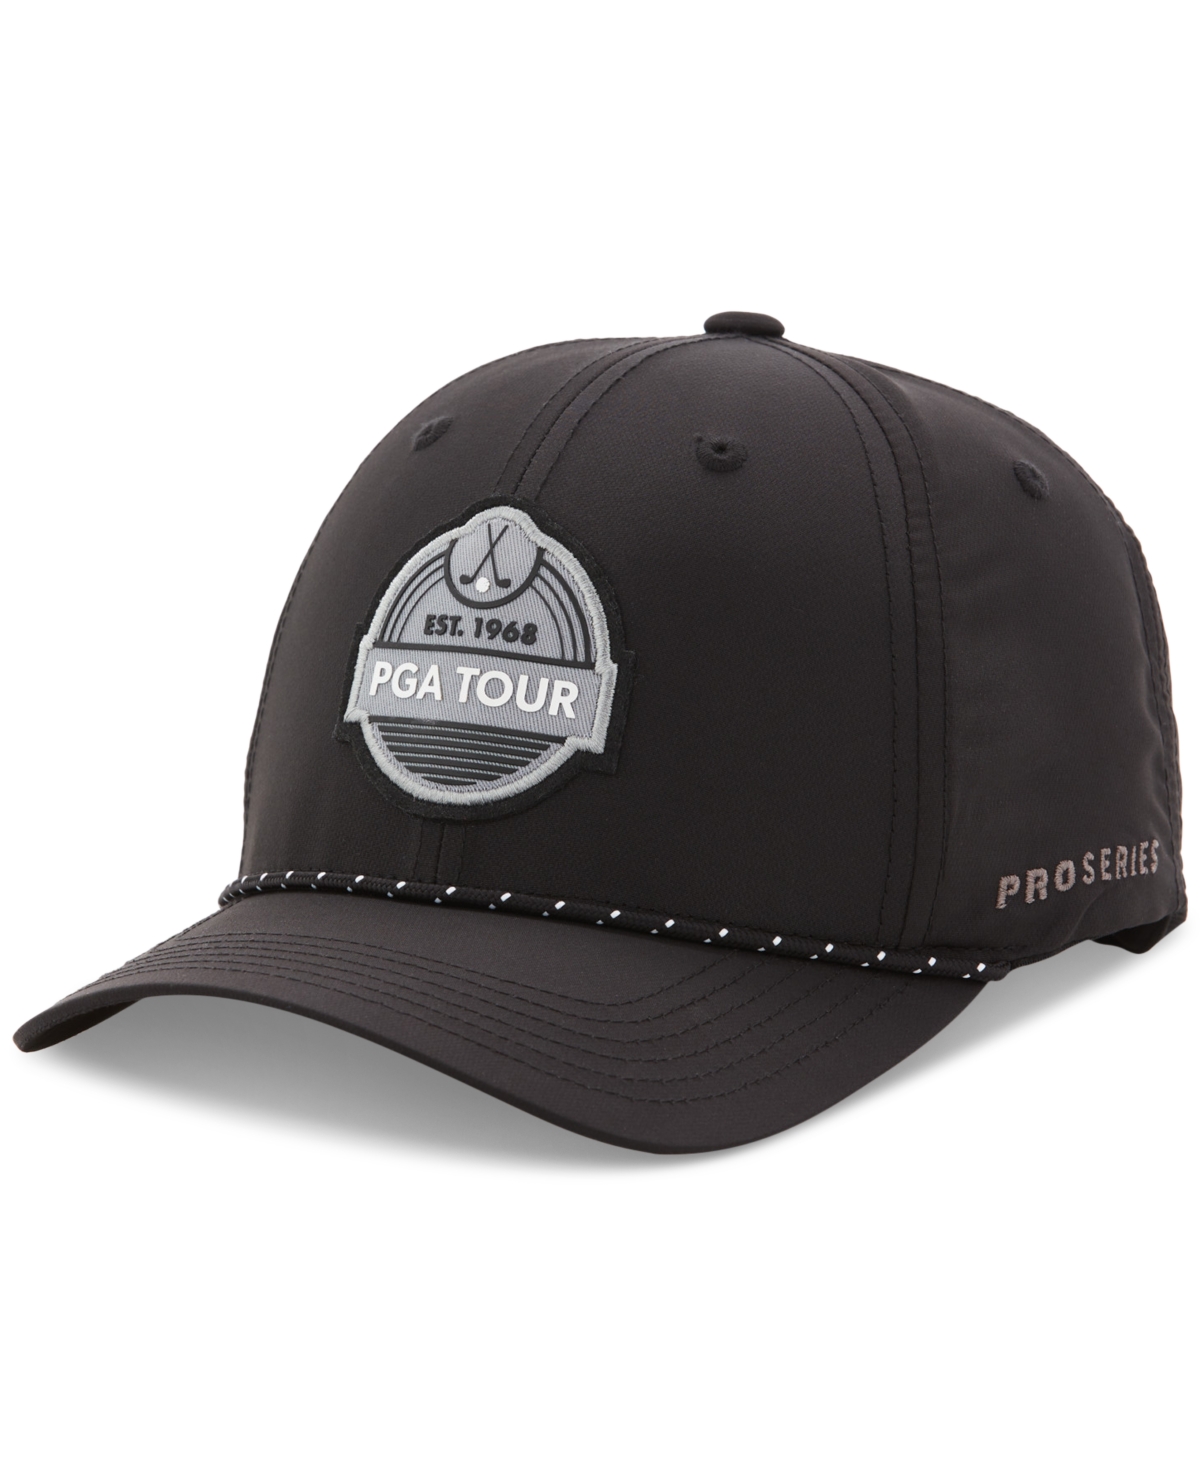 Men's Premium Label Golf Cap - Caviar